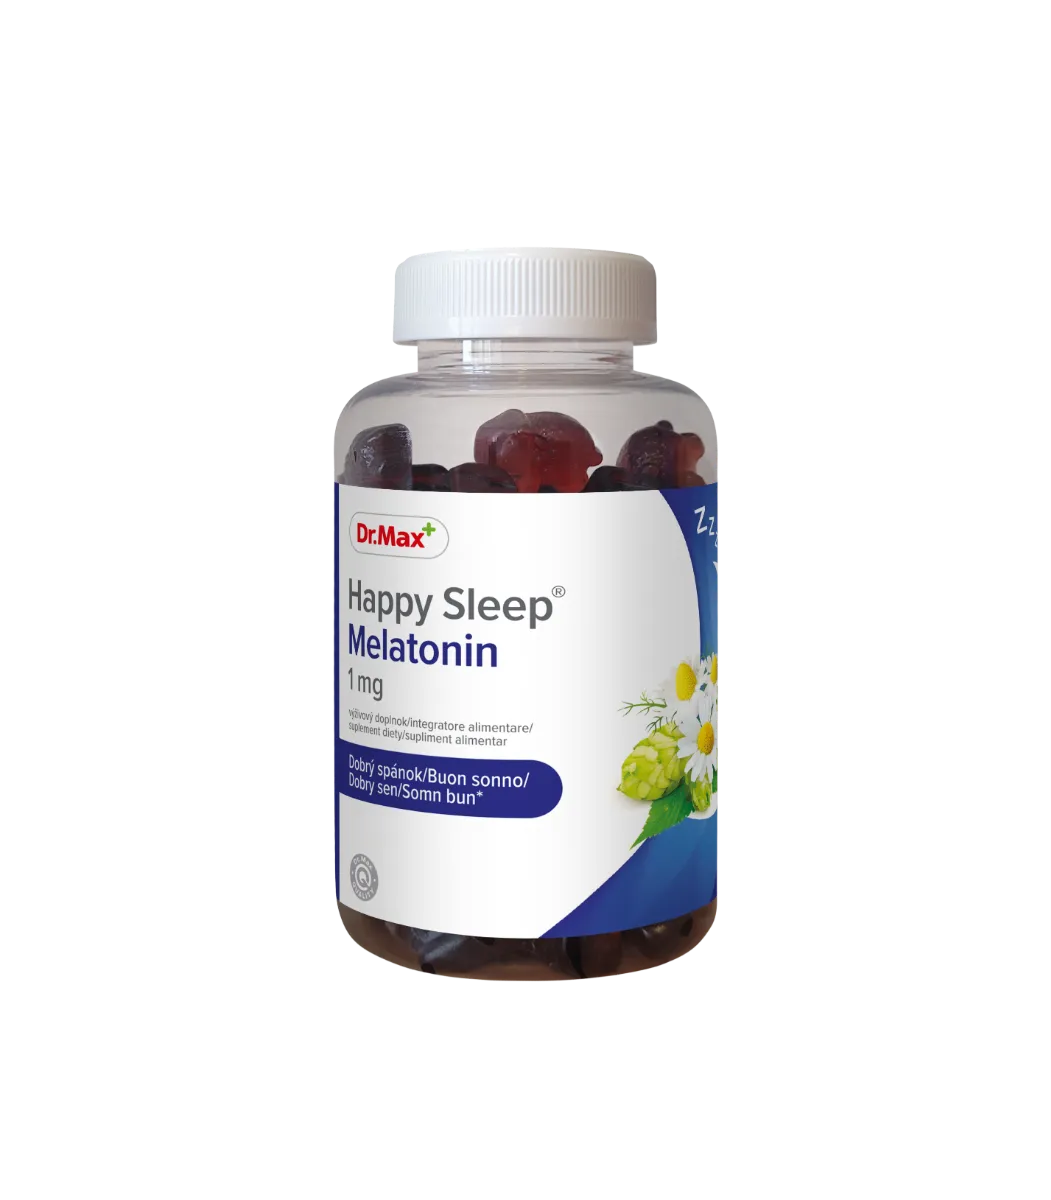 Dr. Max Happy Sleep Melatonin